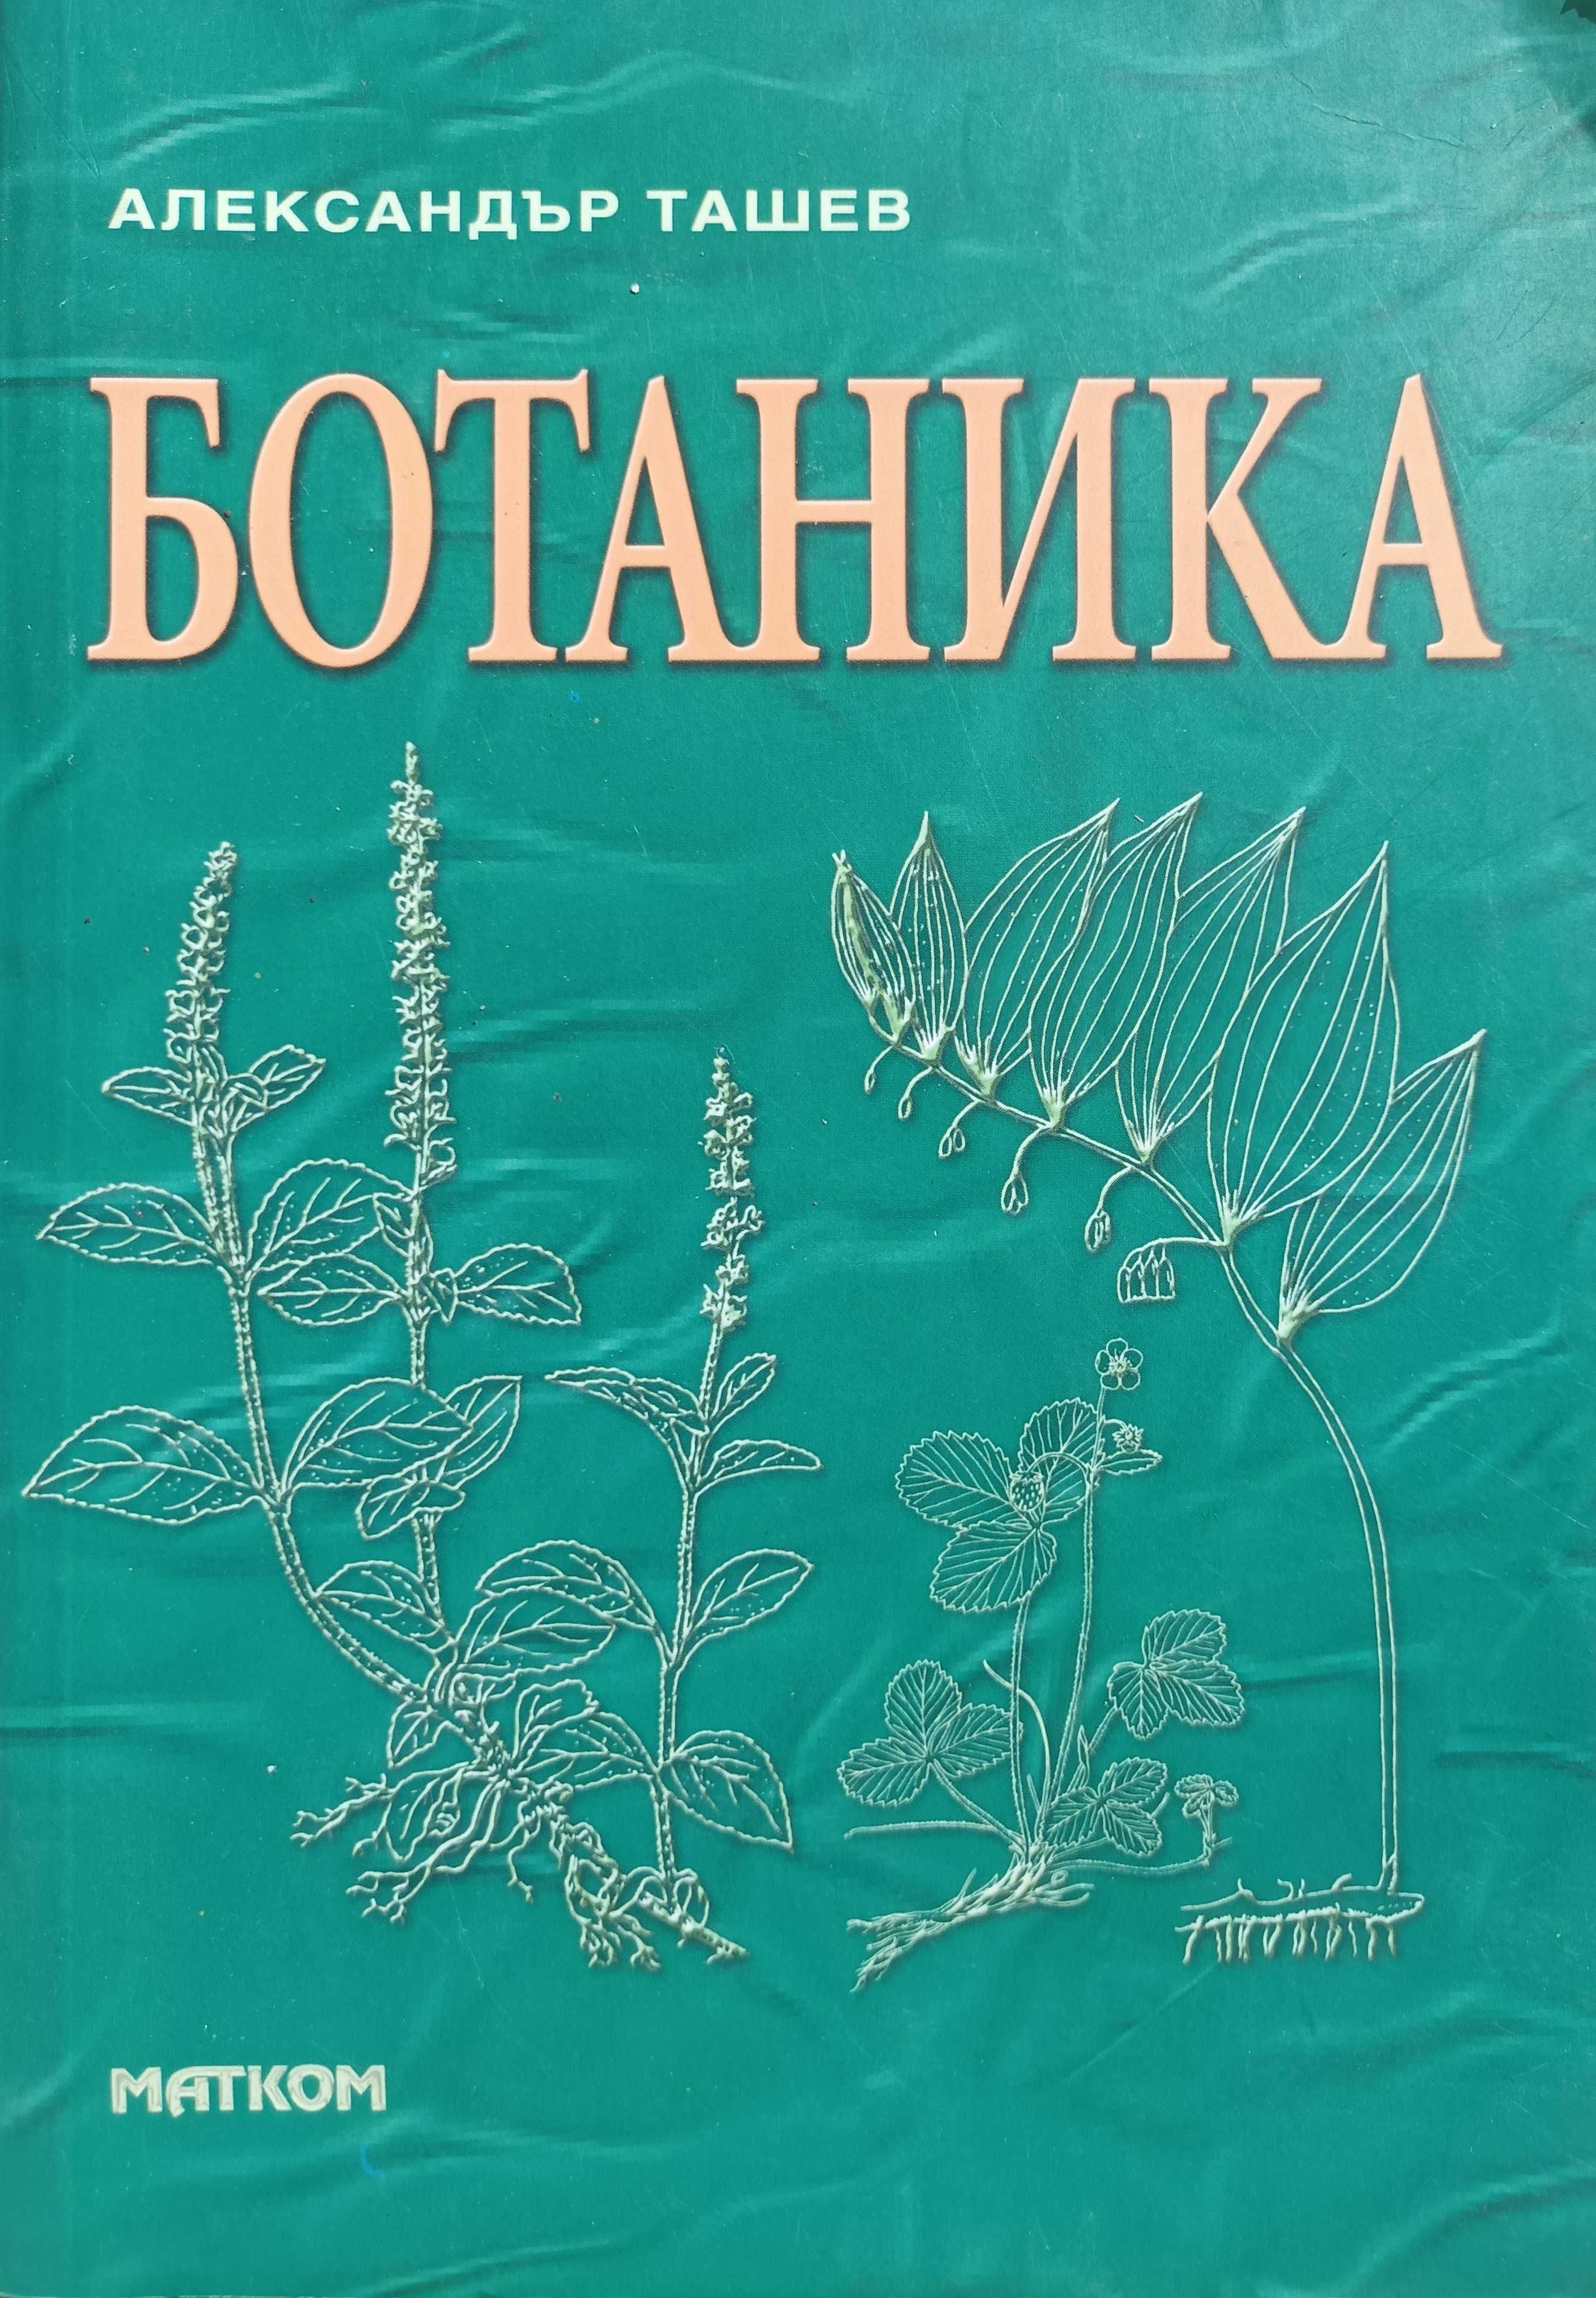 Учебник по Ботаника за Лесотехнически Университет